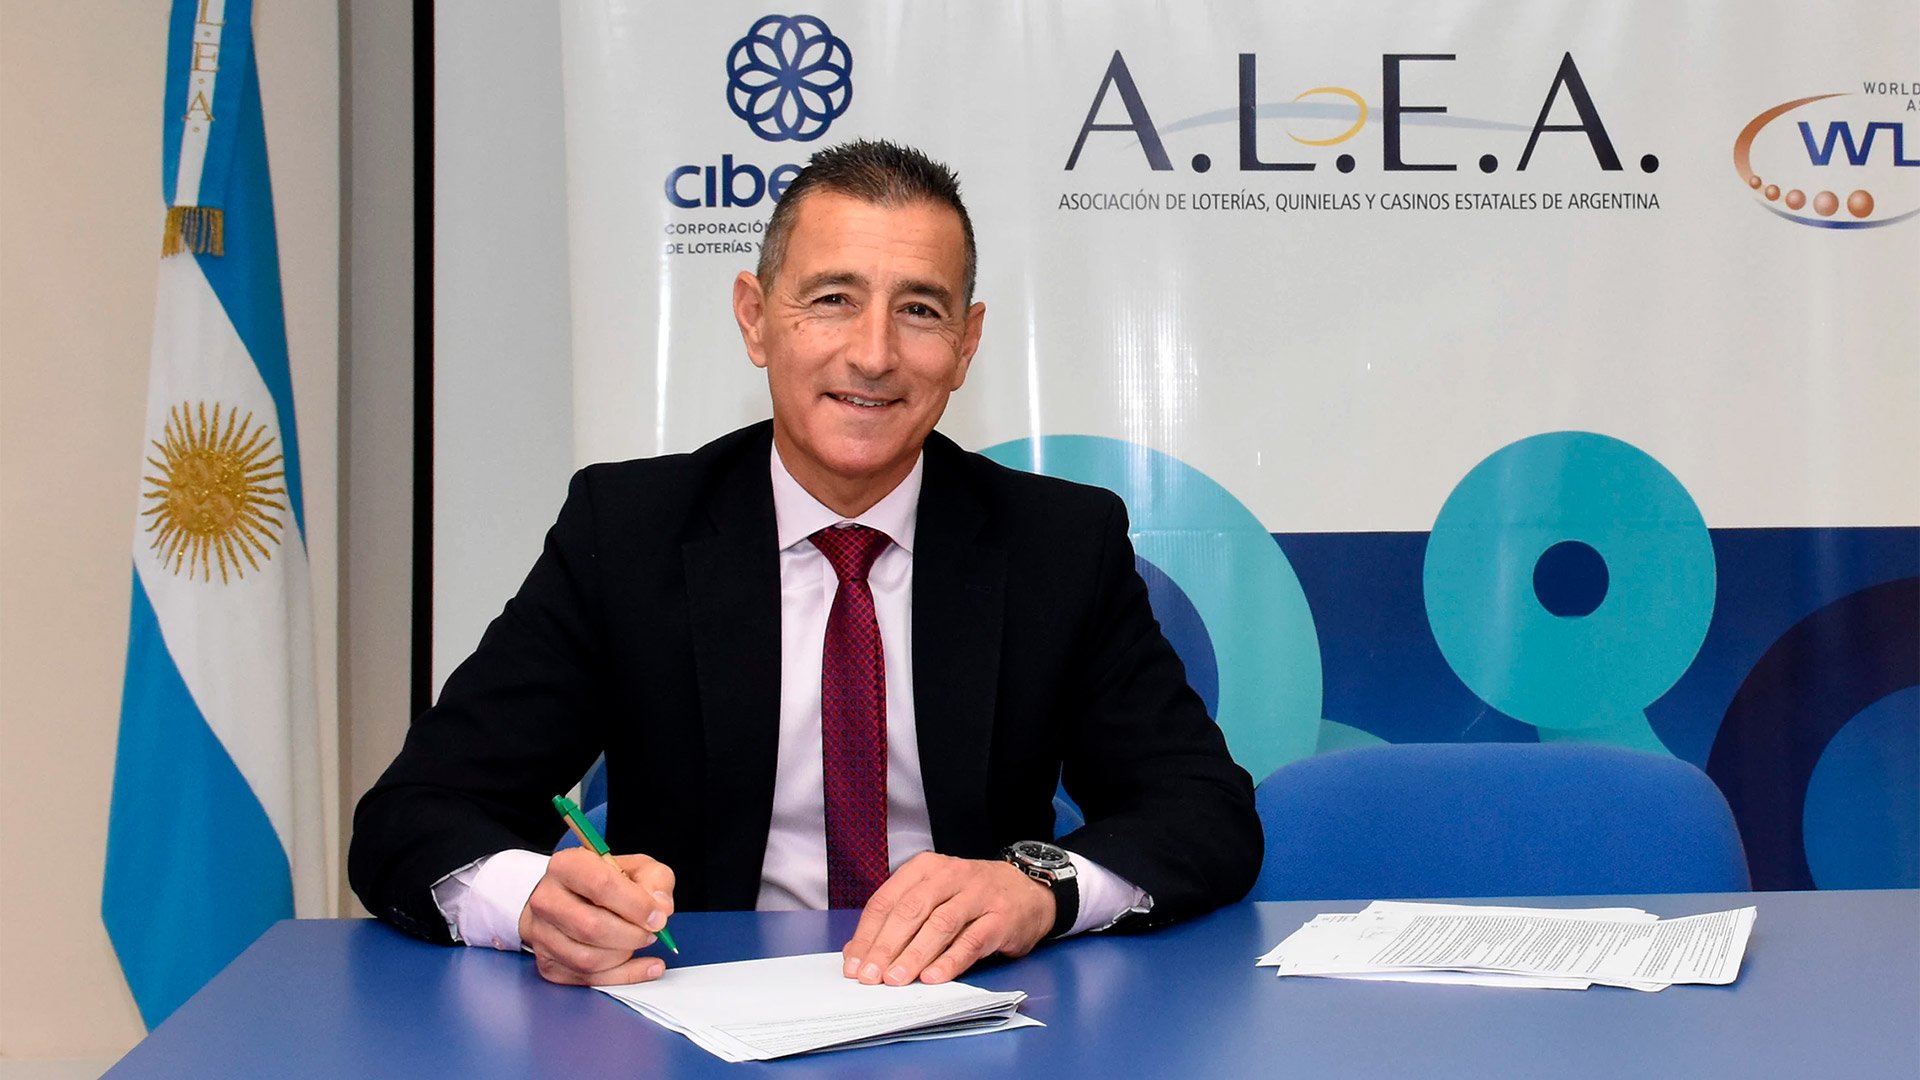 ALEA lanzó una Diplomatura en Innovación Tecnológica y Organizacional en Gestión de Juegos de Azar